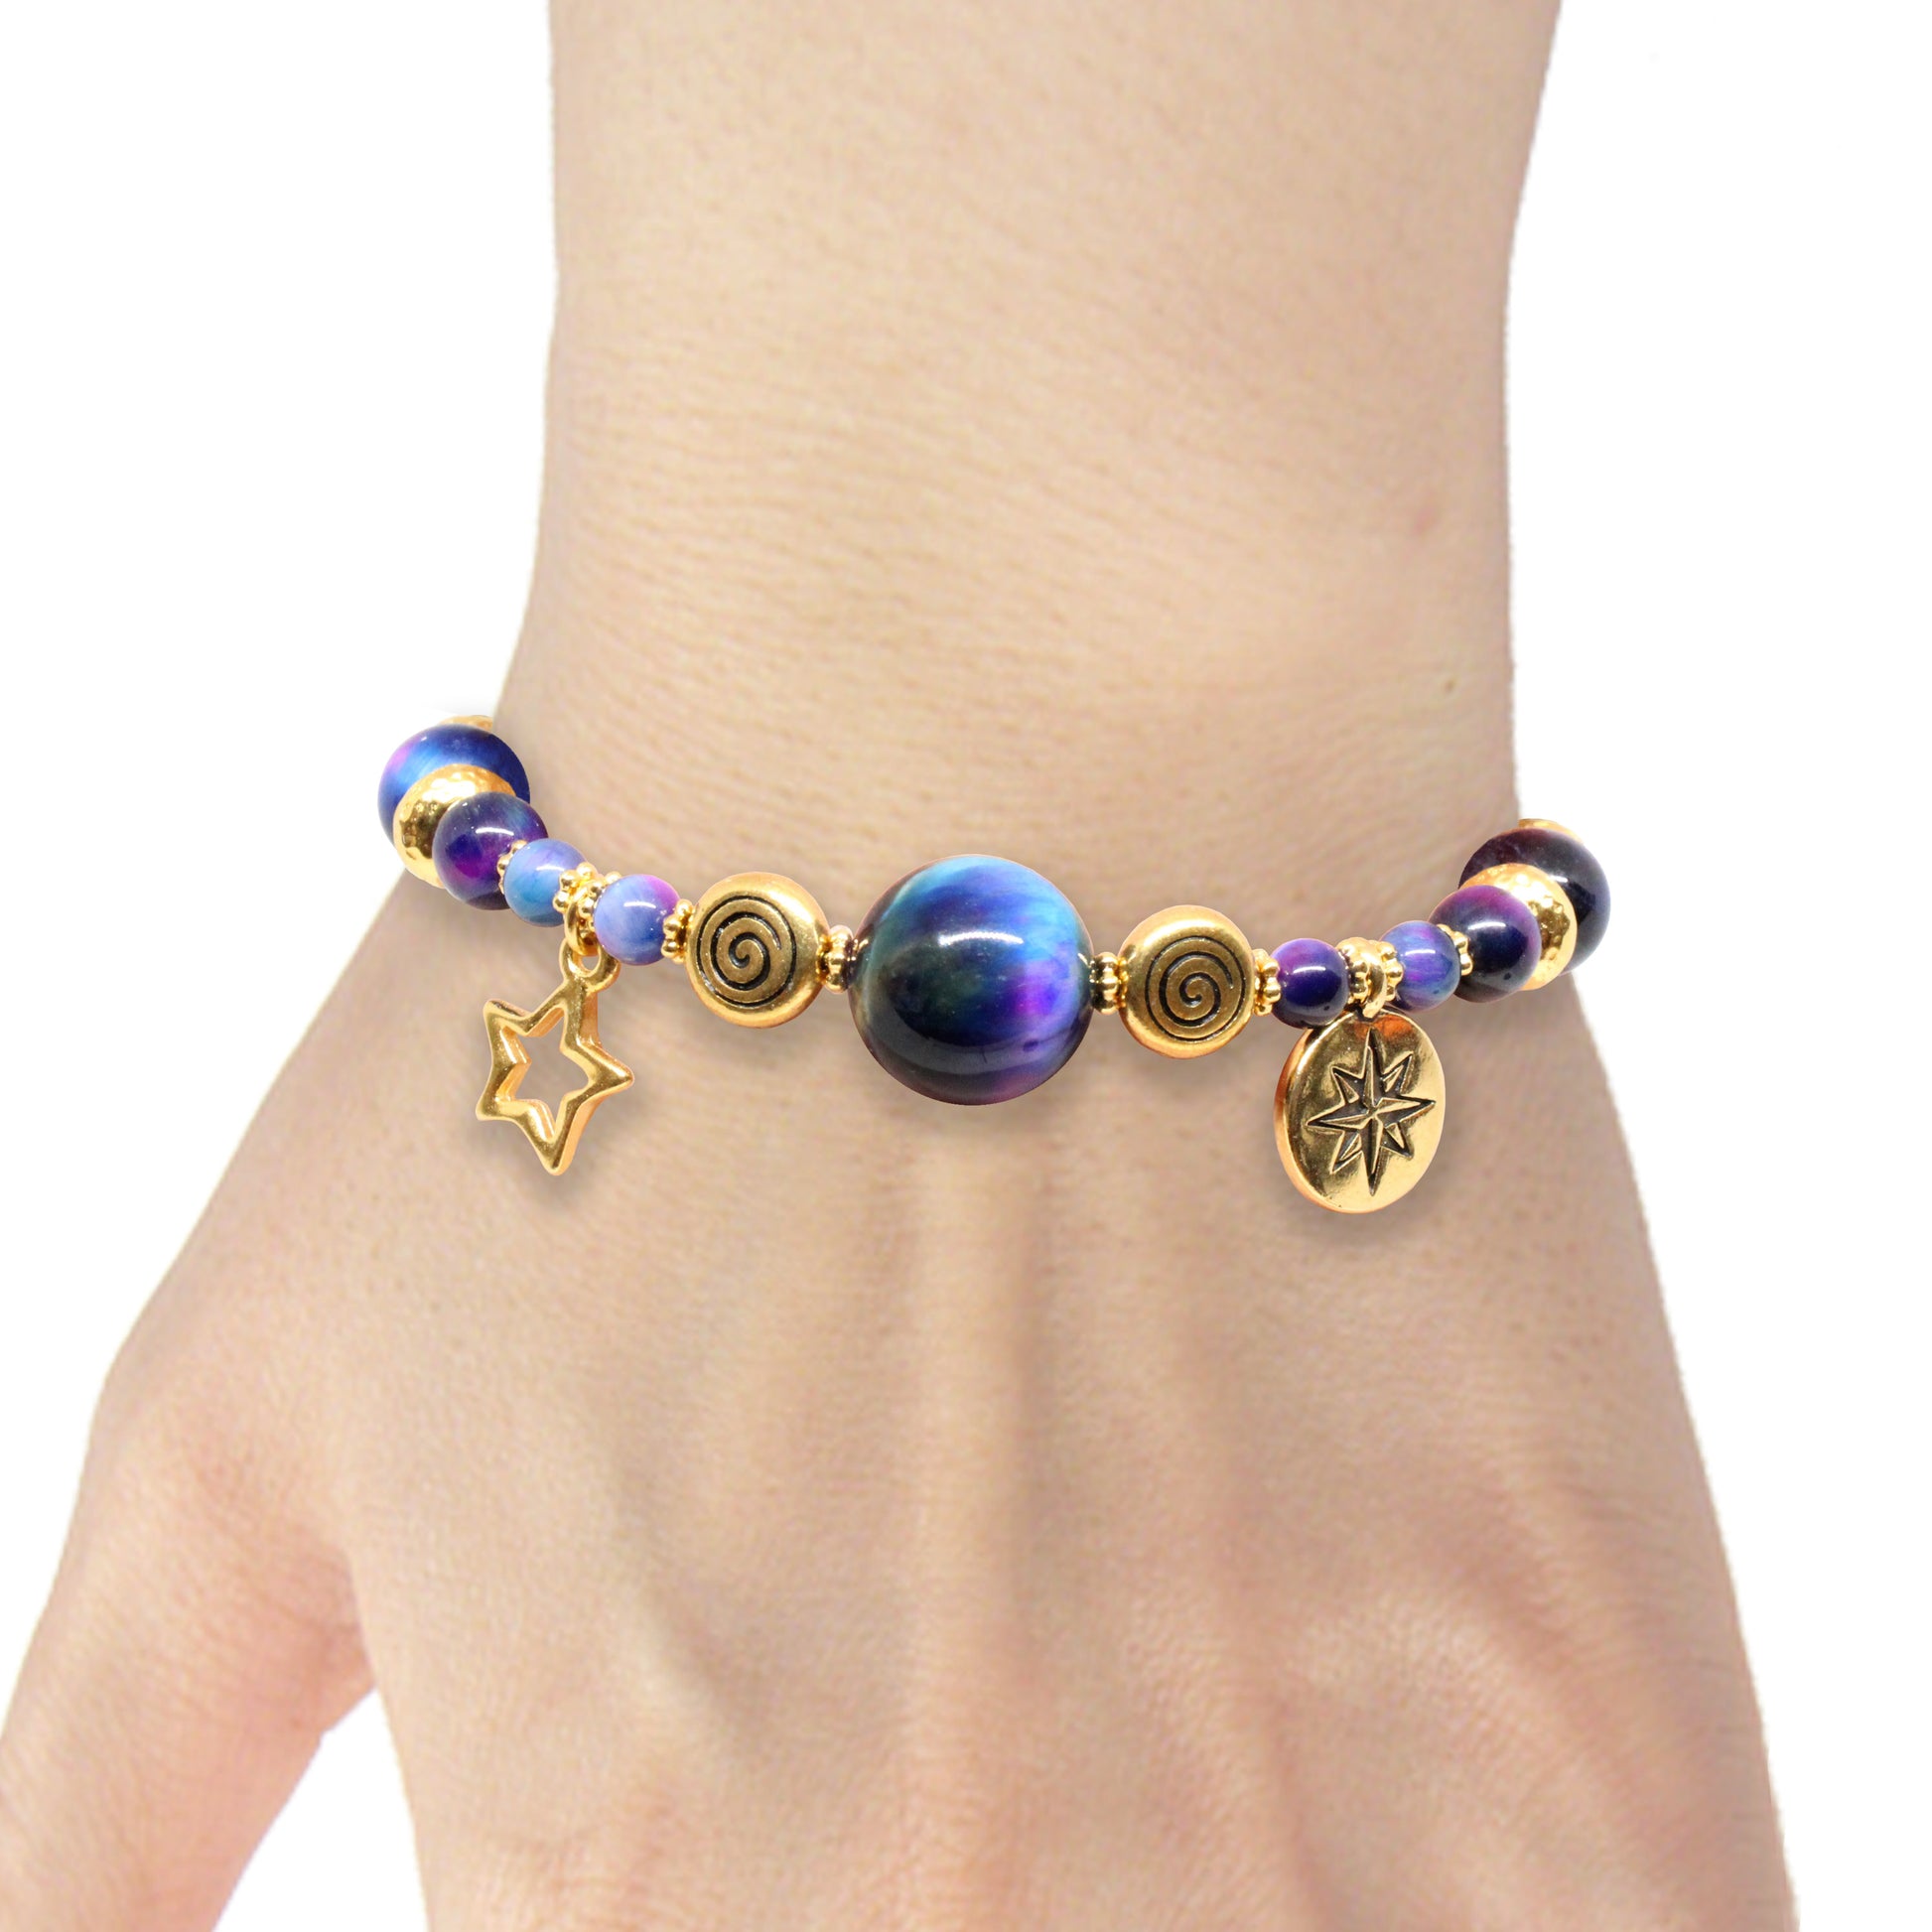 Rainbow Tiger's Eye Bracelet with zodiac charm / 6 to 7 Inch wrist siz –  StravaMax Jewelry Etc